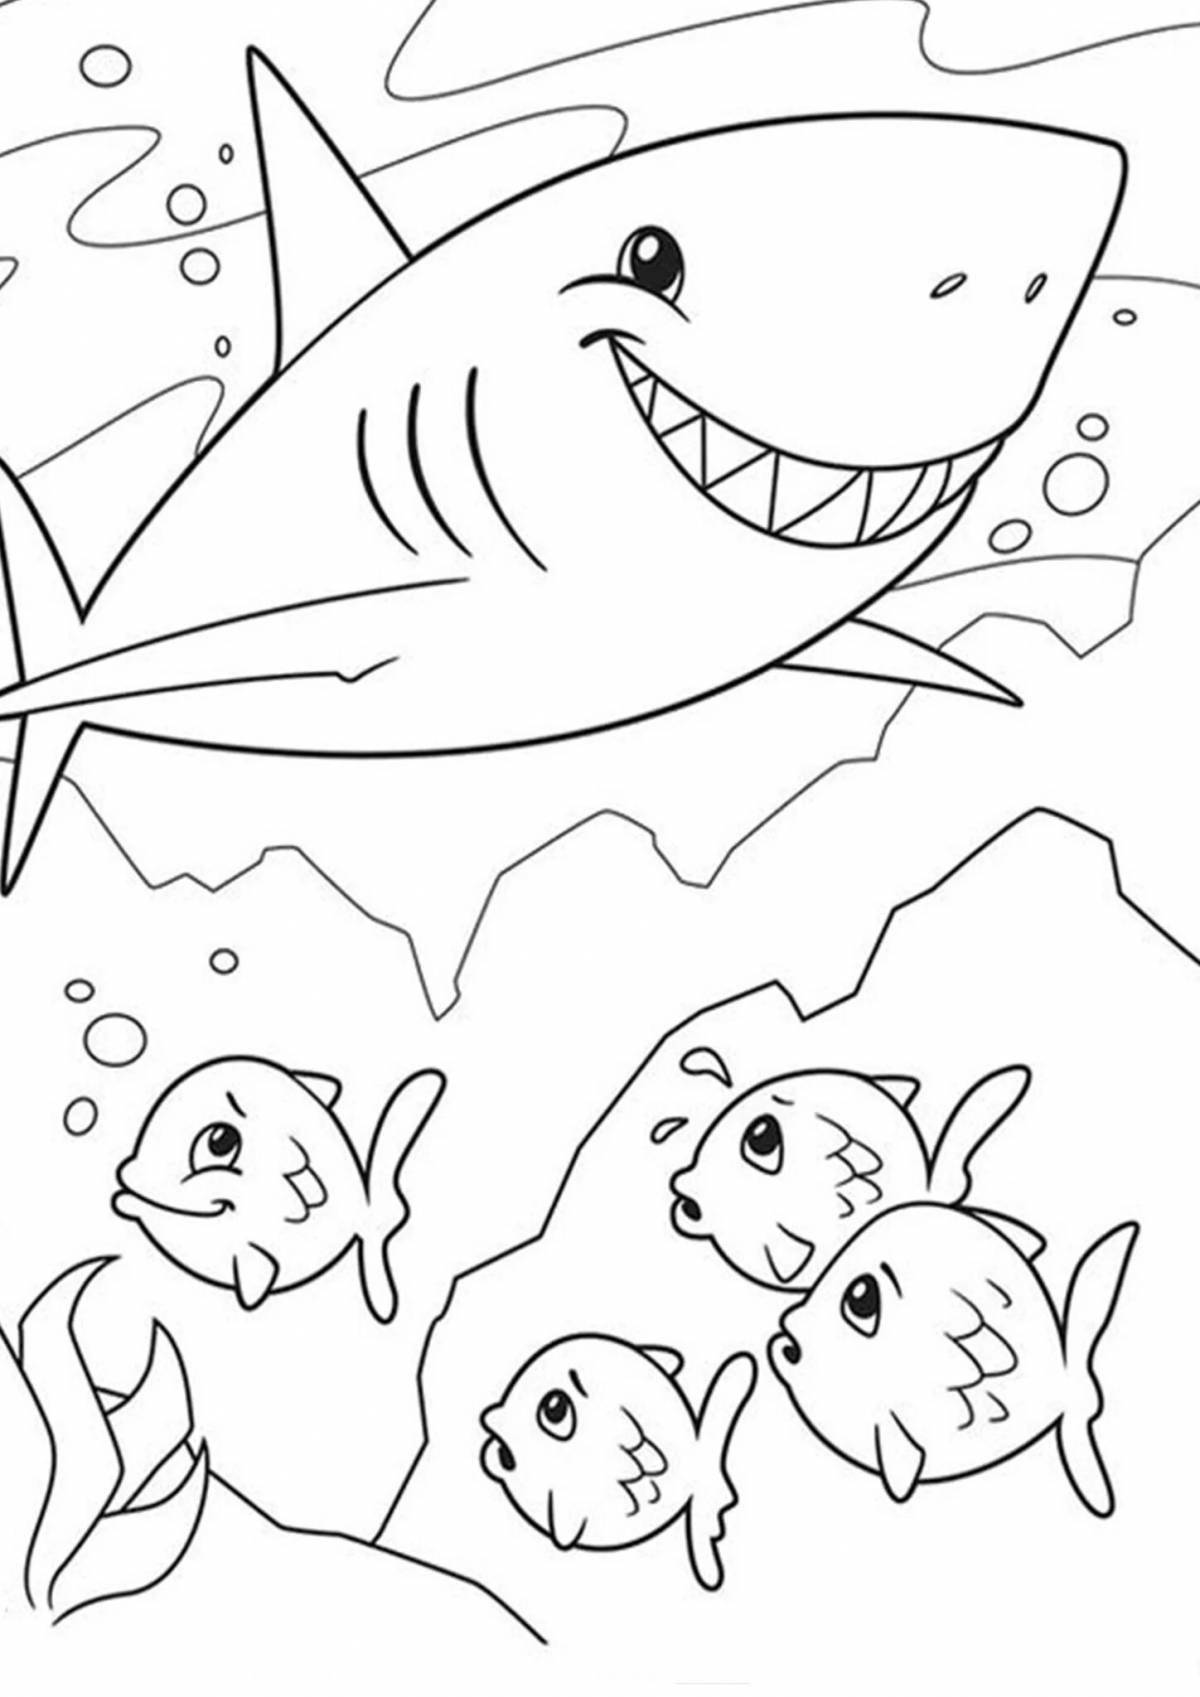 Увлекательная раскраска акулы для детей 6-7 лет